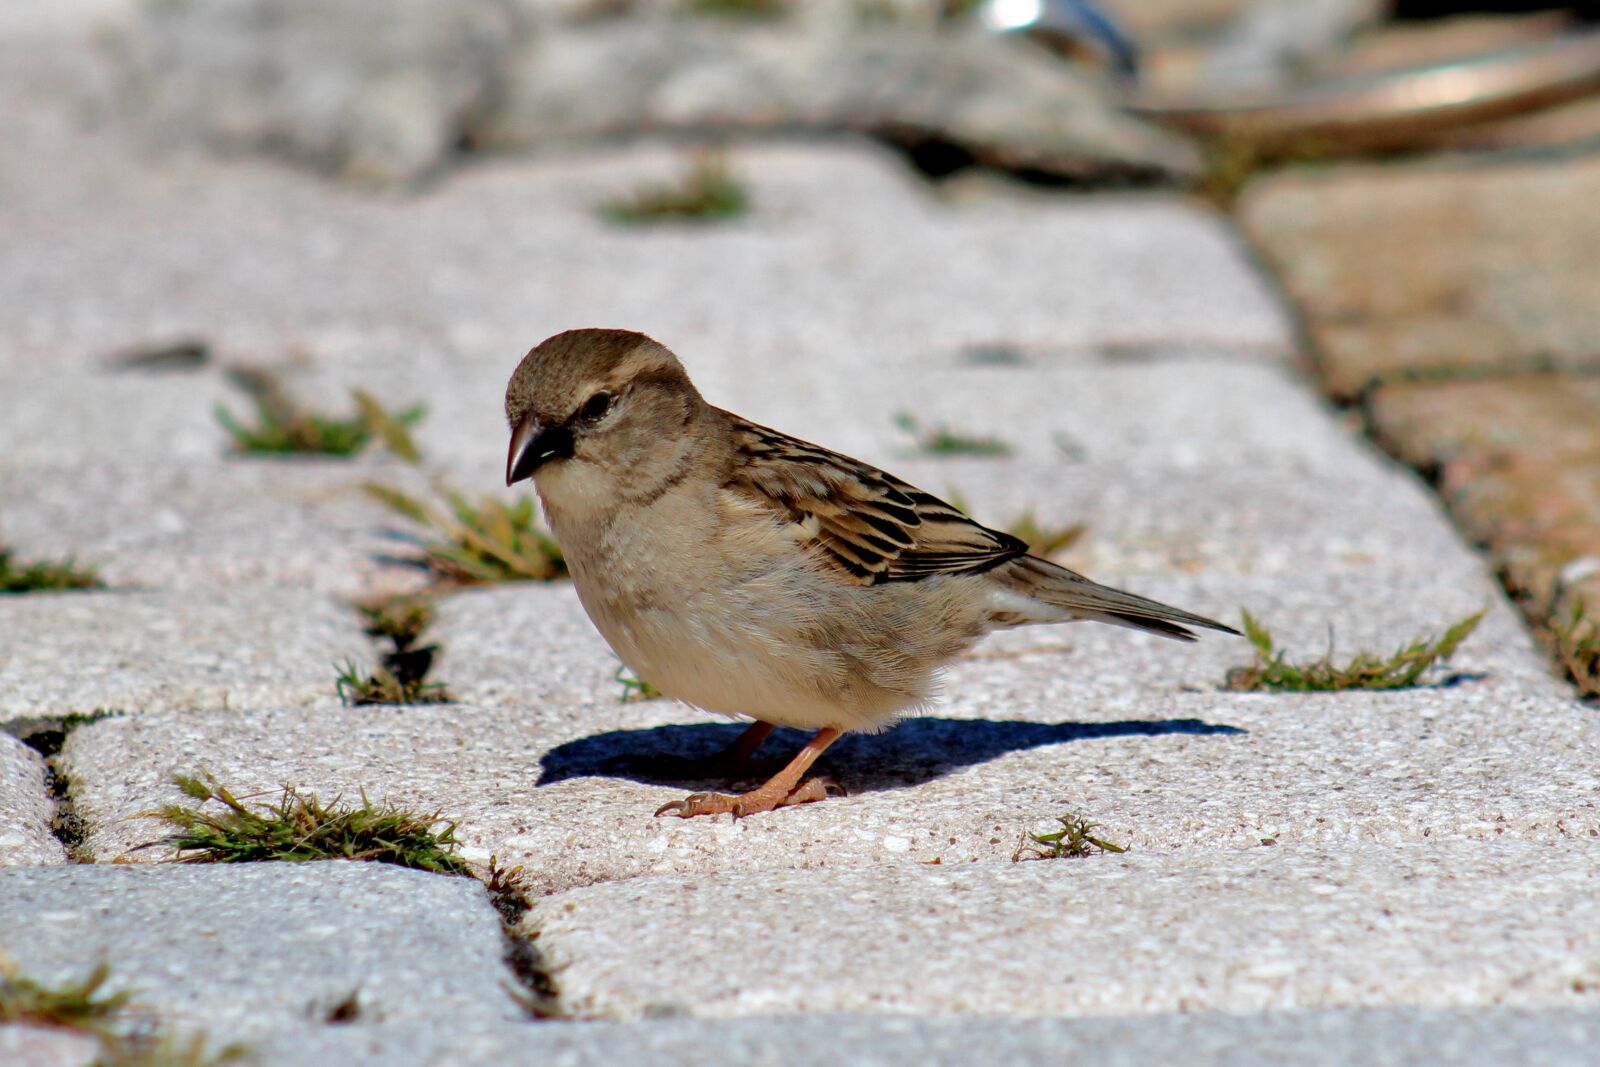 Canon EF 75-300mm f/4-5.6 sample photo. Bird, female sparrow, sparrow photography